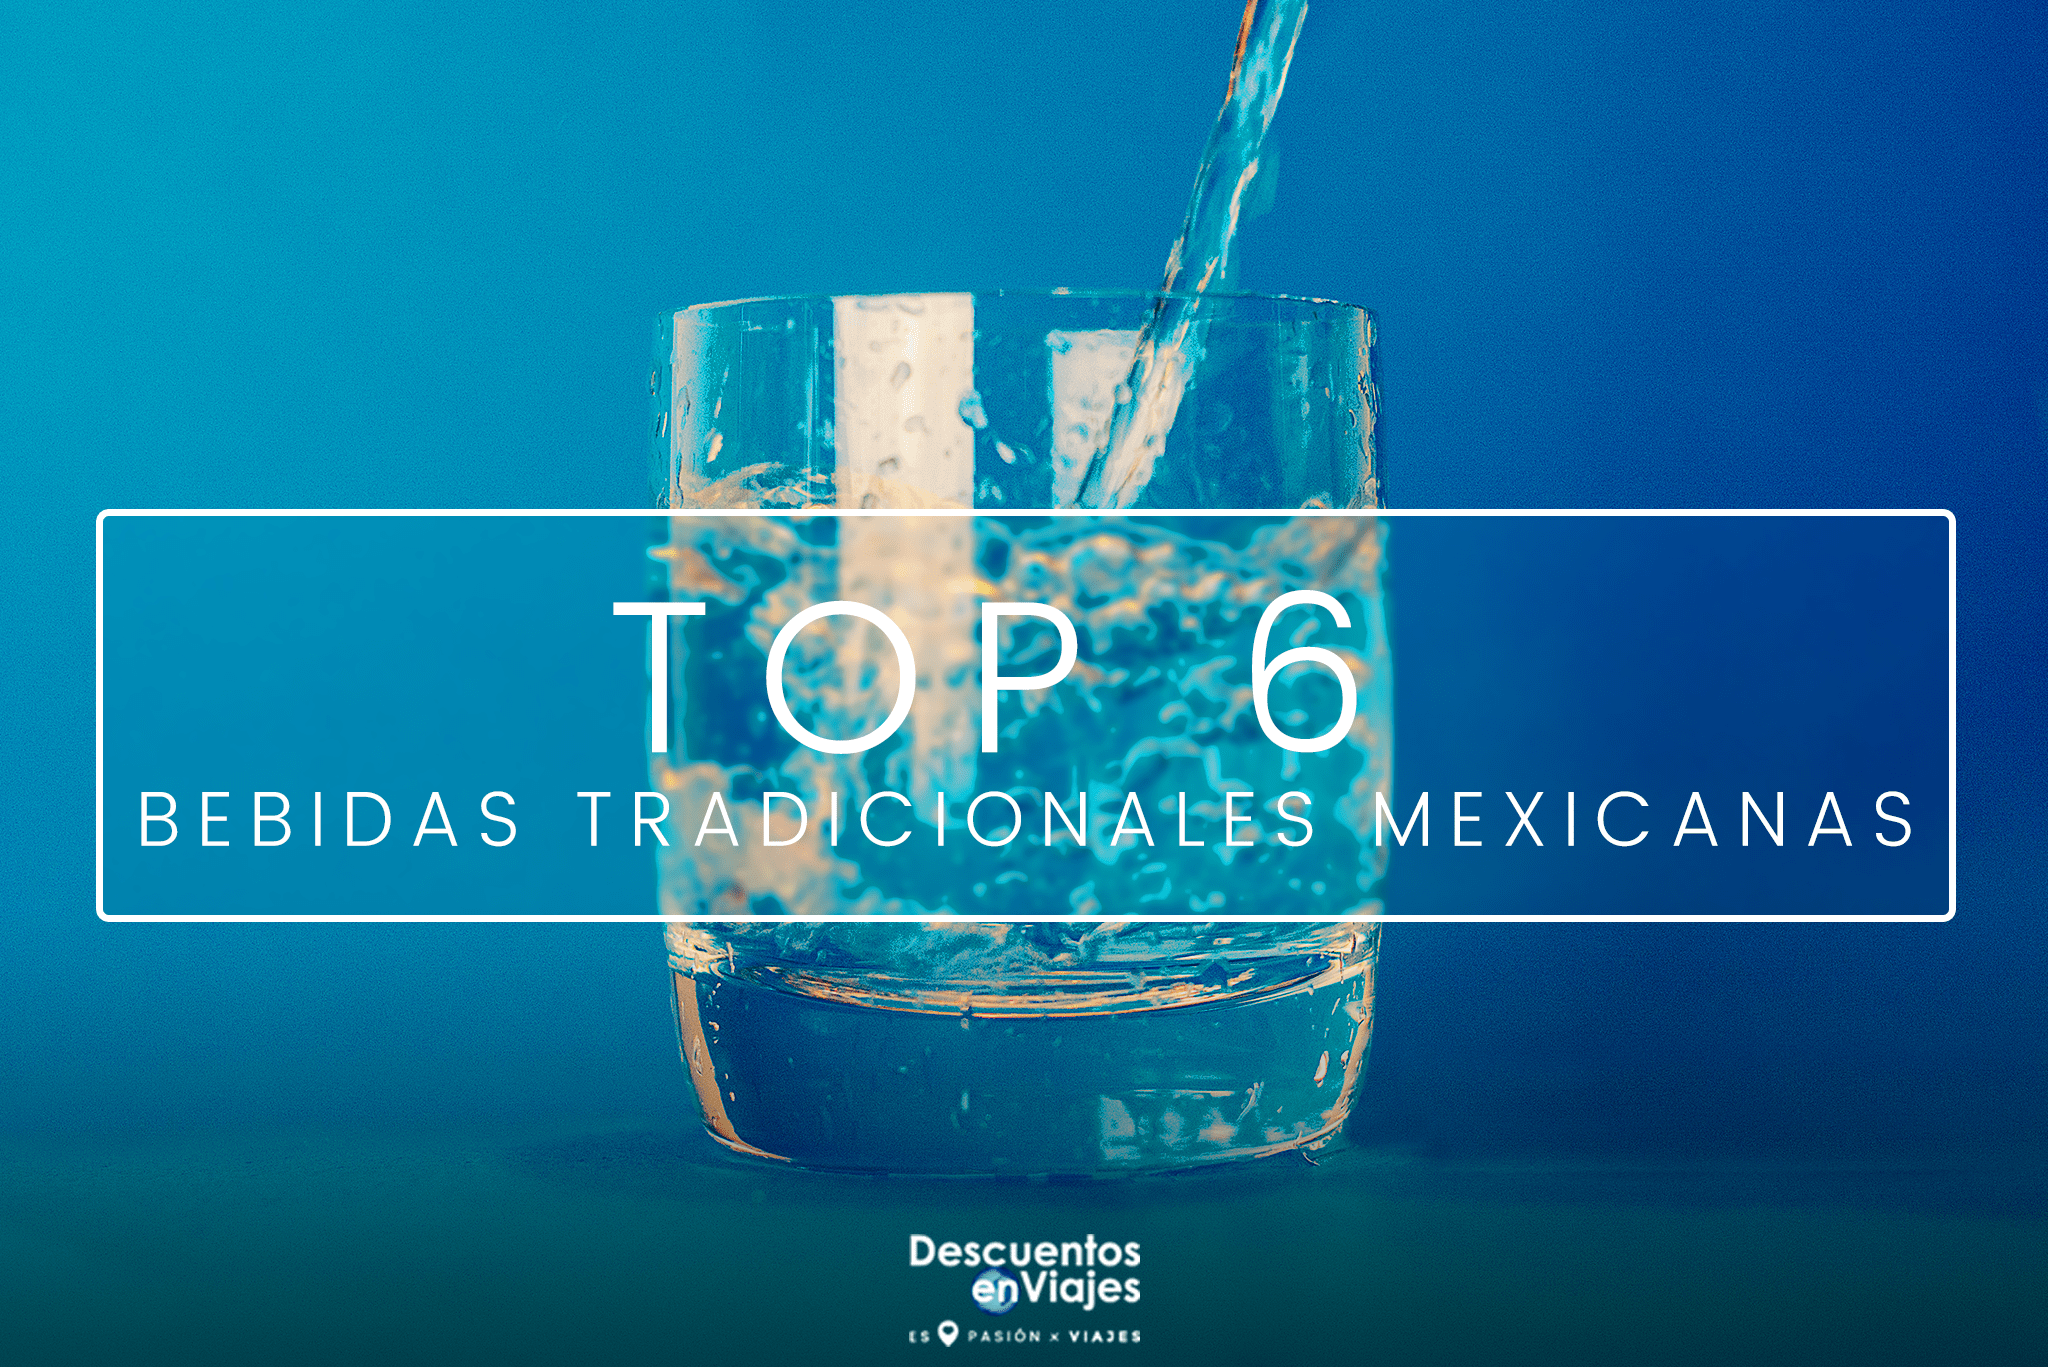 TOP BEBEIDAS TRADICIONALES MEXICANAS